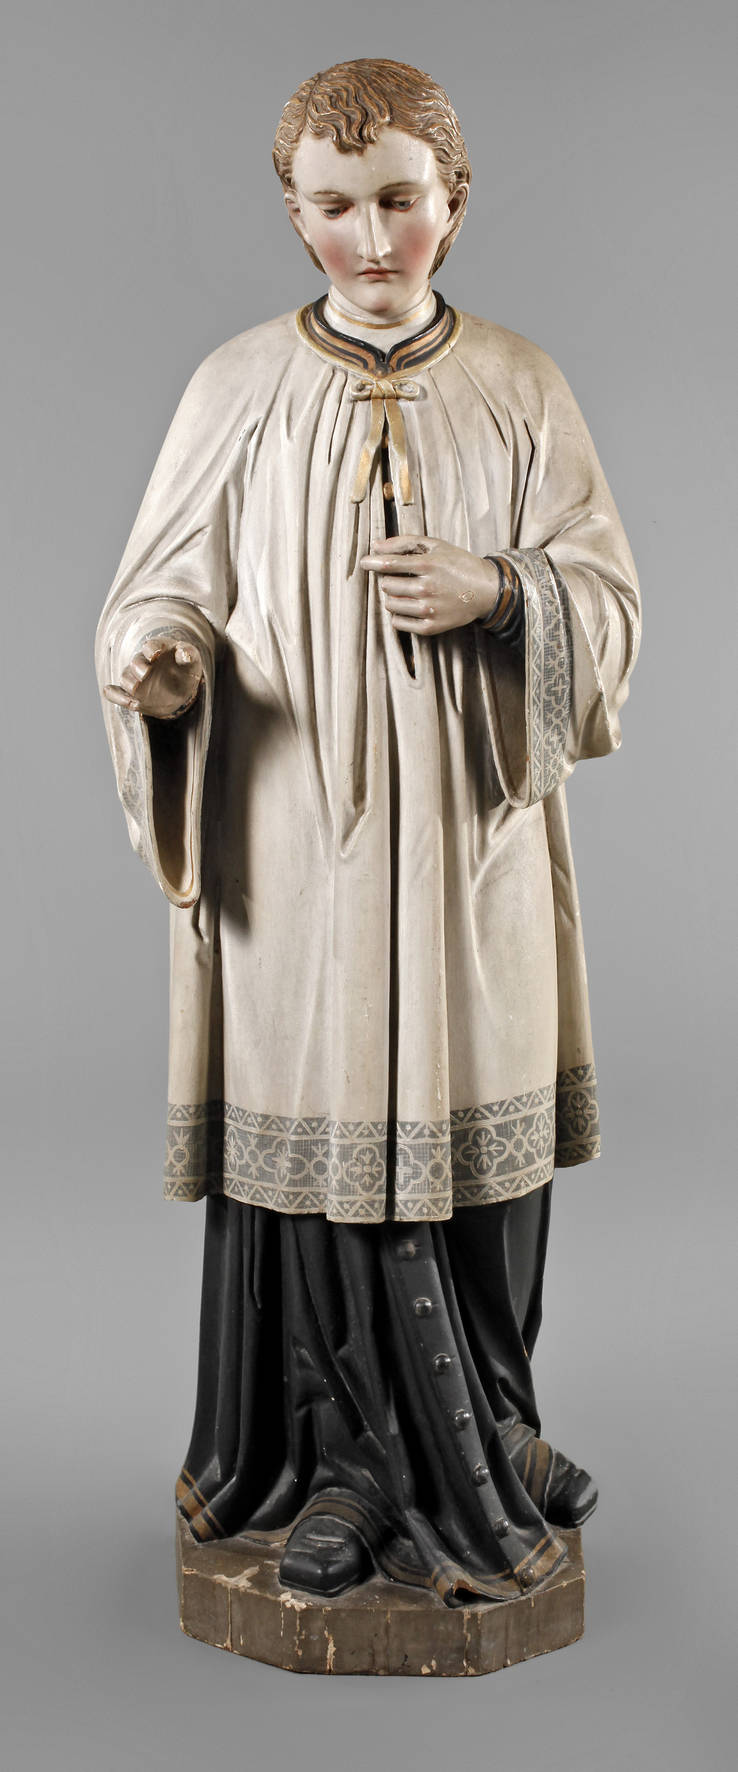 Heiligenfigur Aloisius von Gonzaga